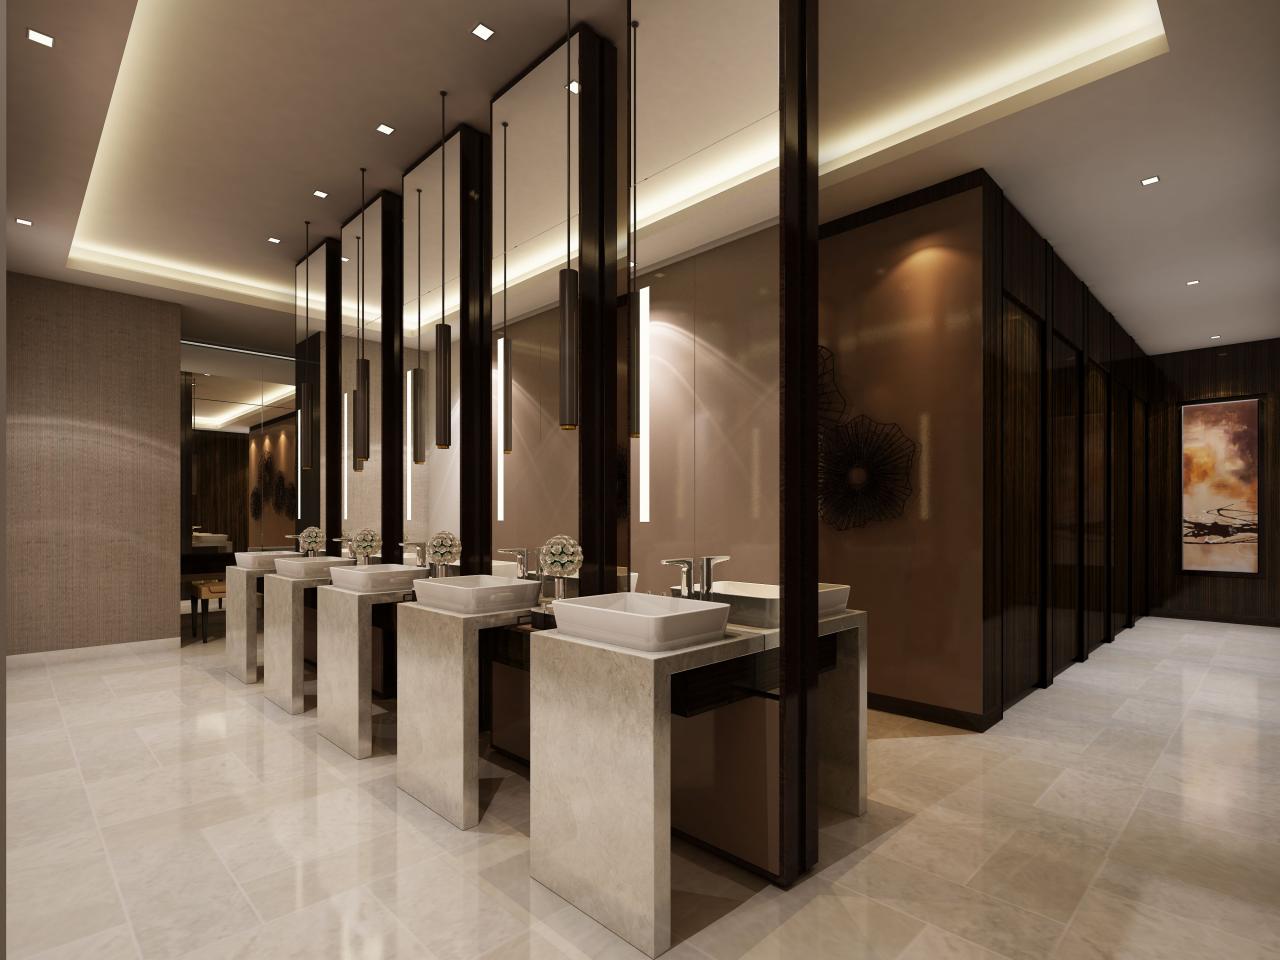 Commercial bathroom designs, Bathroom interior design, Restroom design